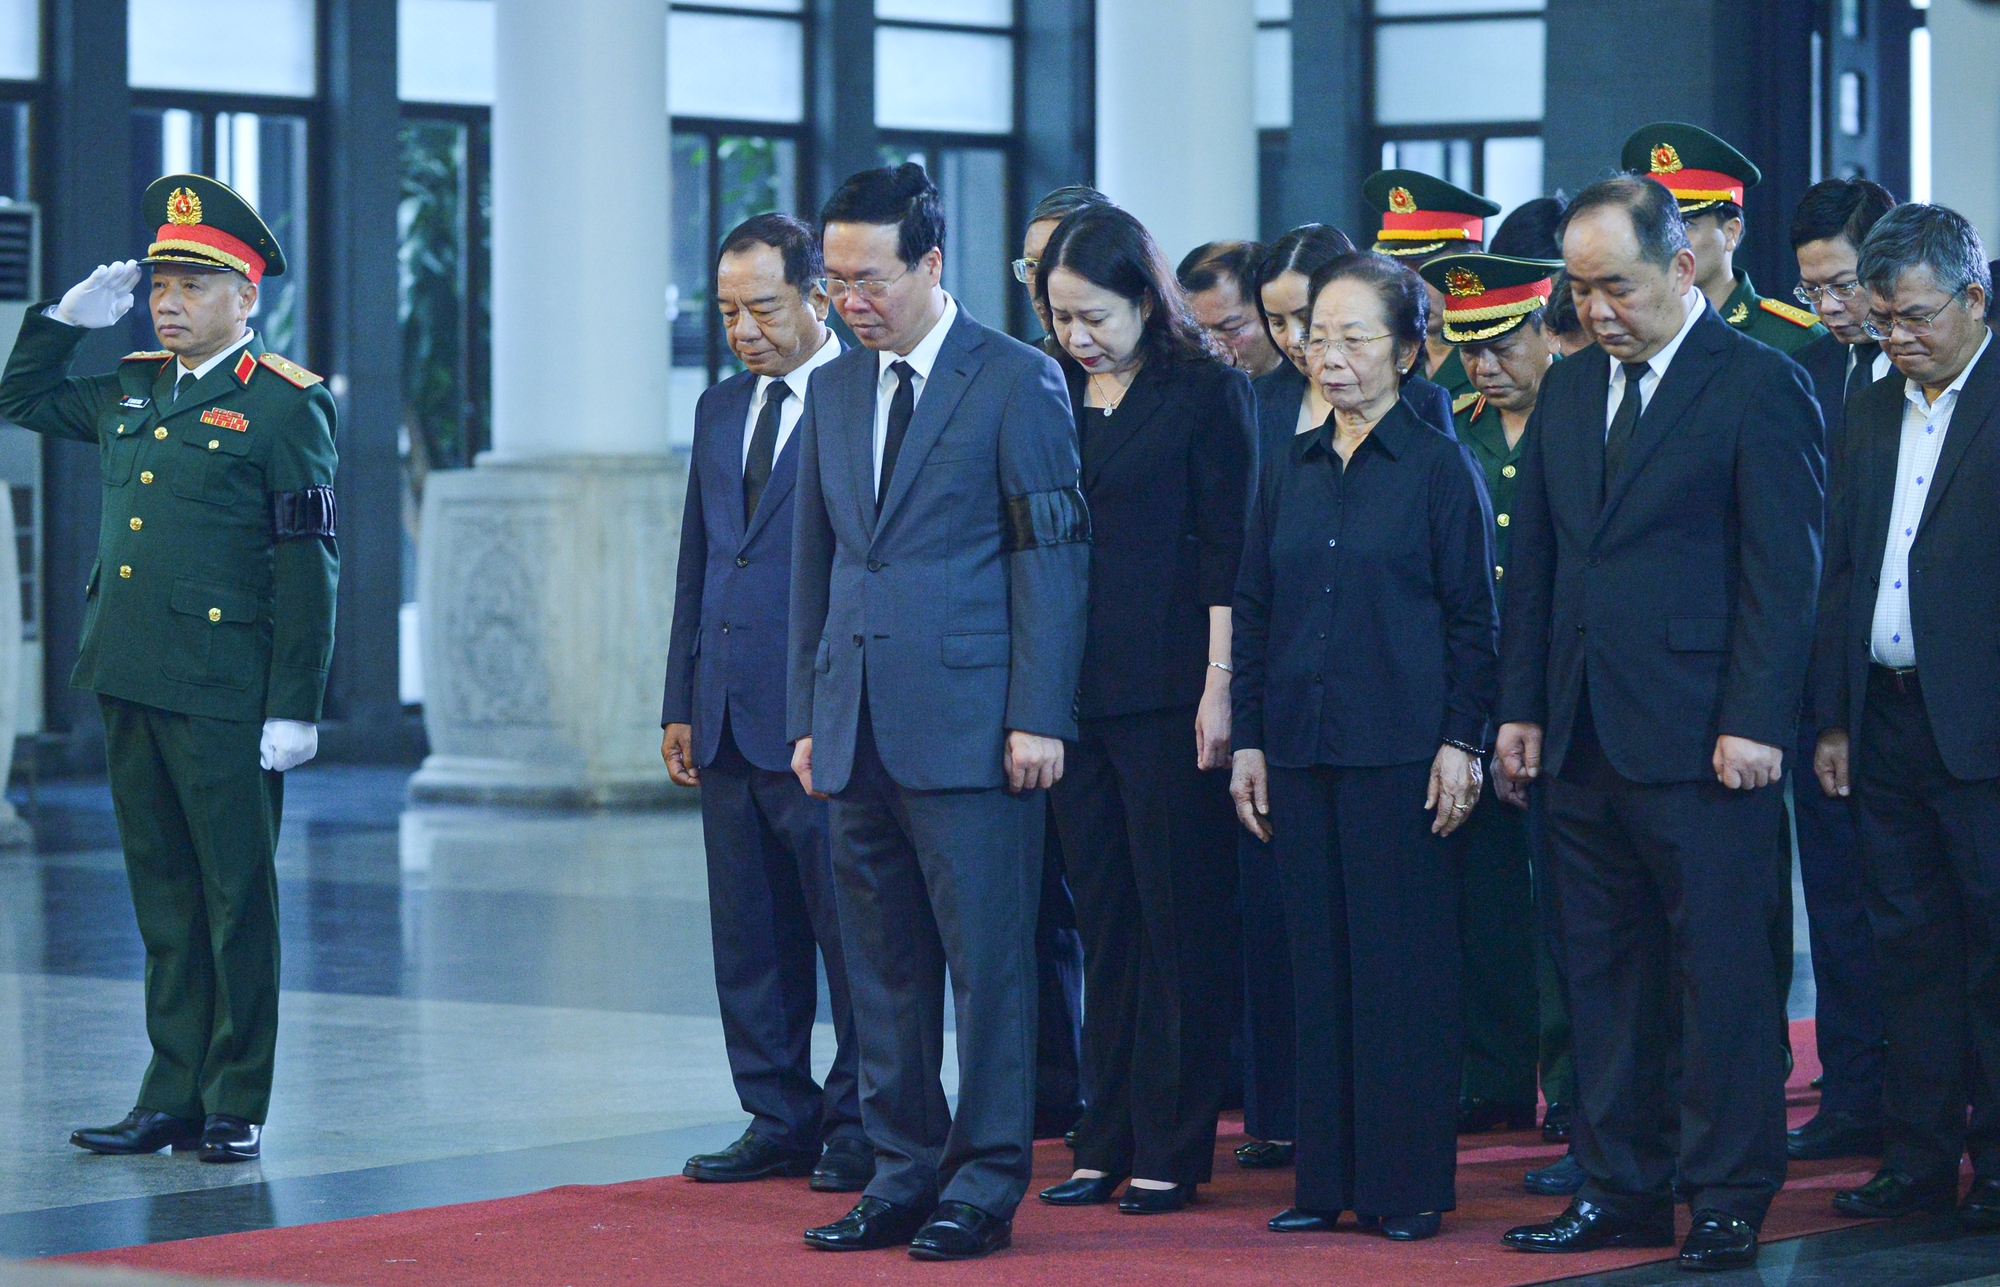 Lễ tang cấp cao Thượng tướng Nguyễn Chí Vịnh - Ảnh 1.